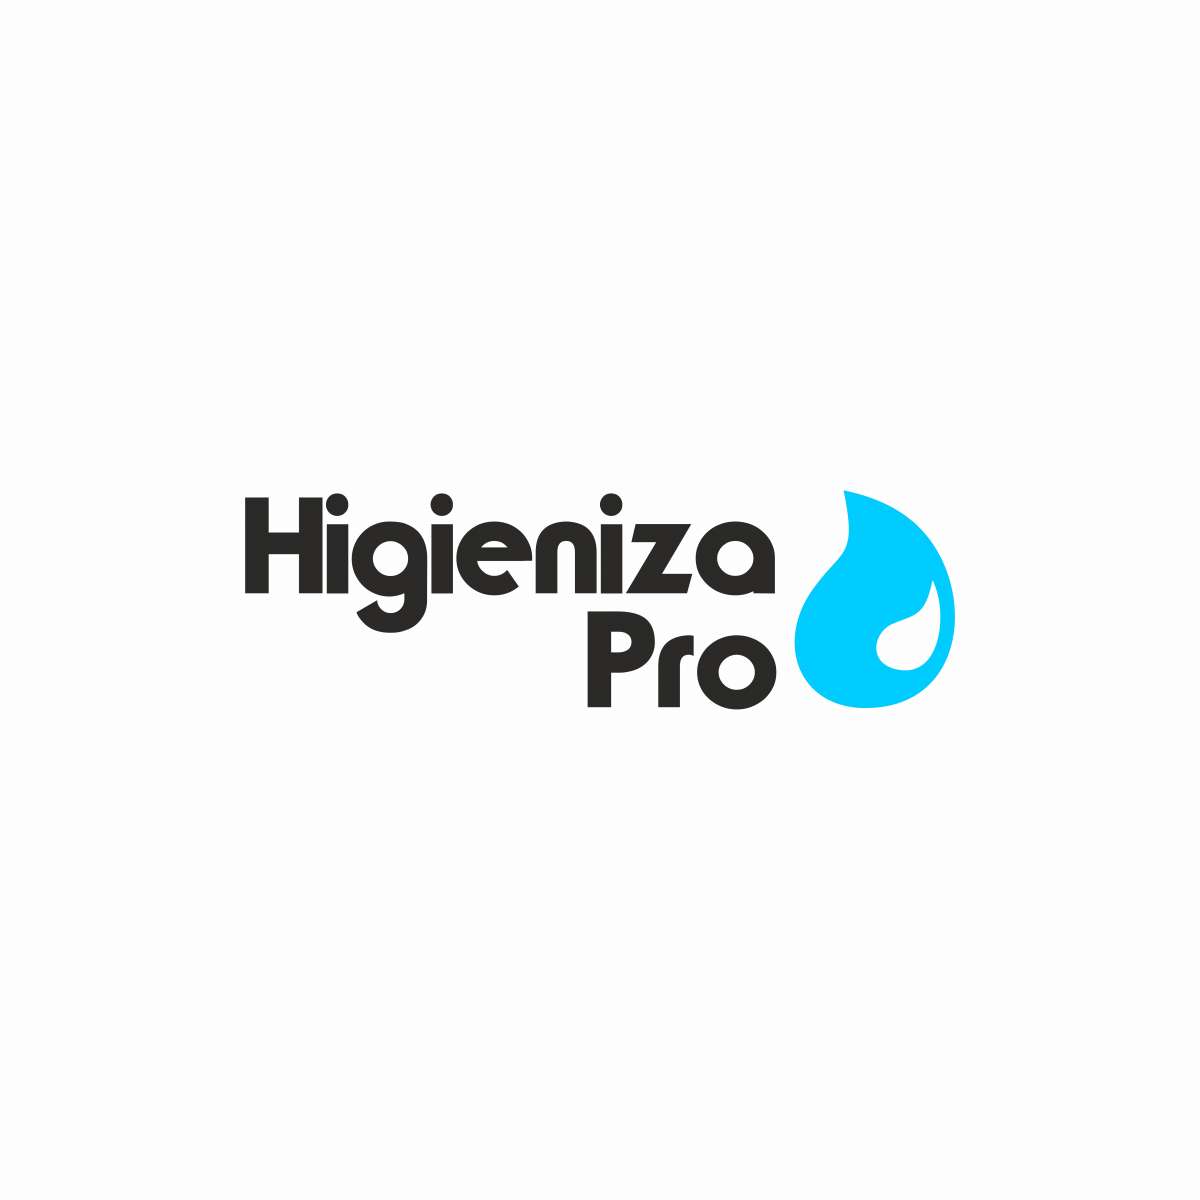 Higieniza Pro - Lisboa - Limpeza